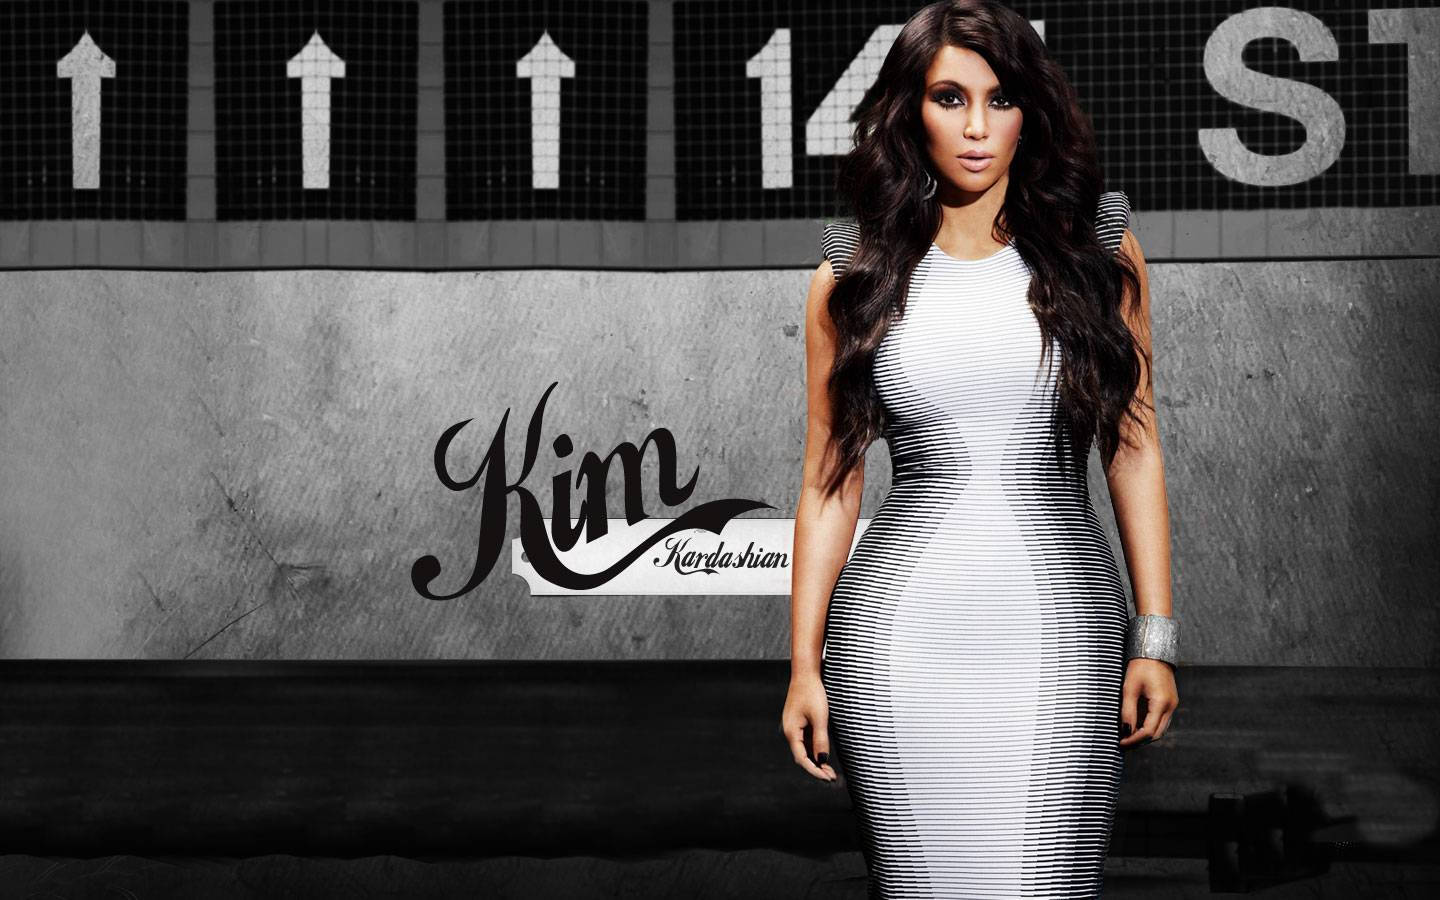 Kim Kardashian In Striped Dress Wallpaper